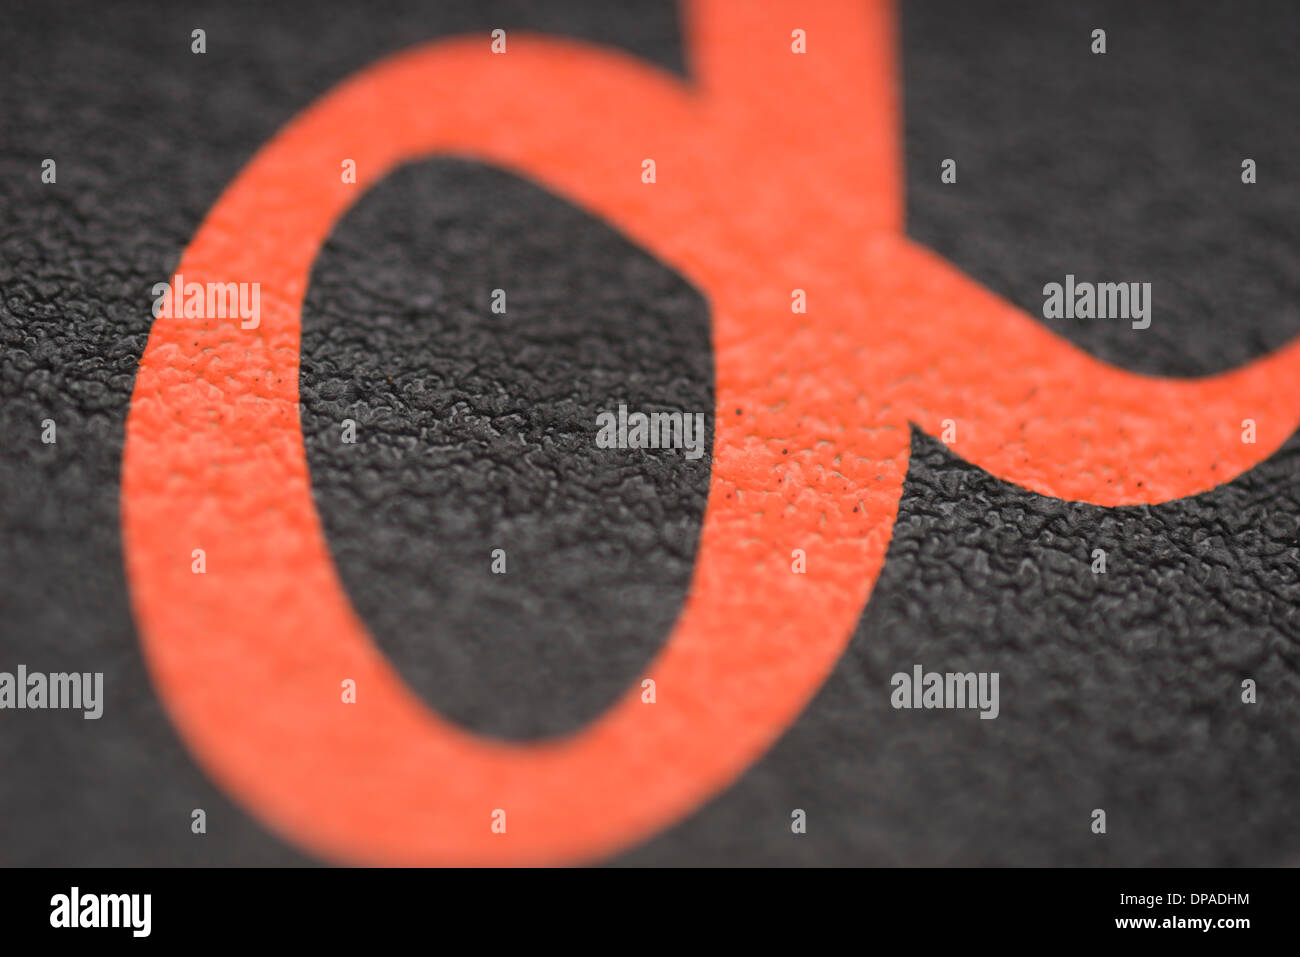 Sony Alpha schermata con il logo stampato sulla lente di plastica tappo Foto Stock